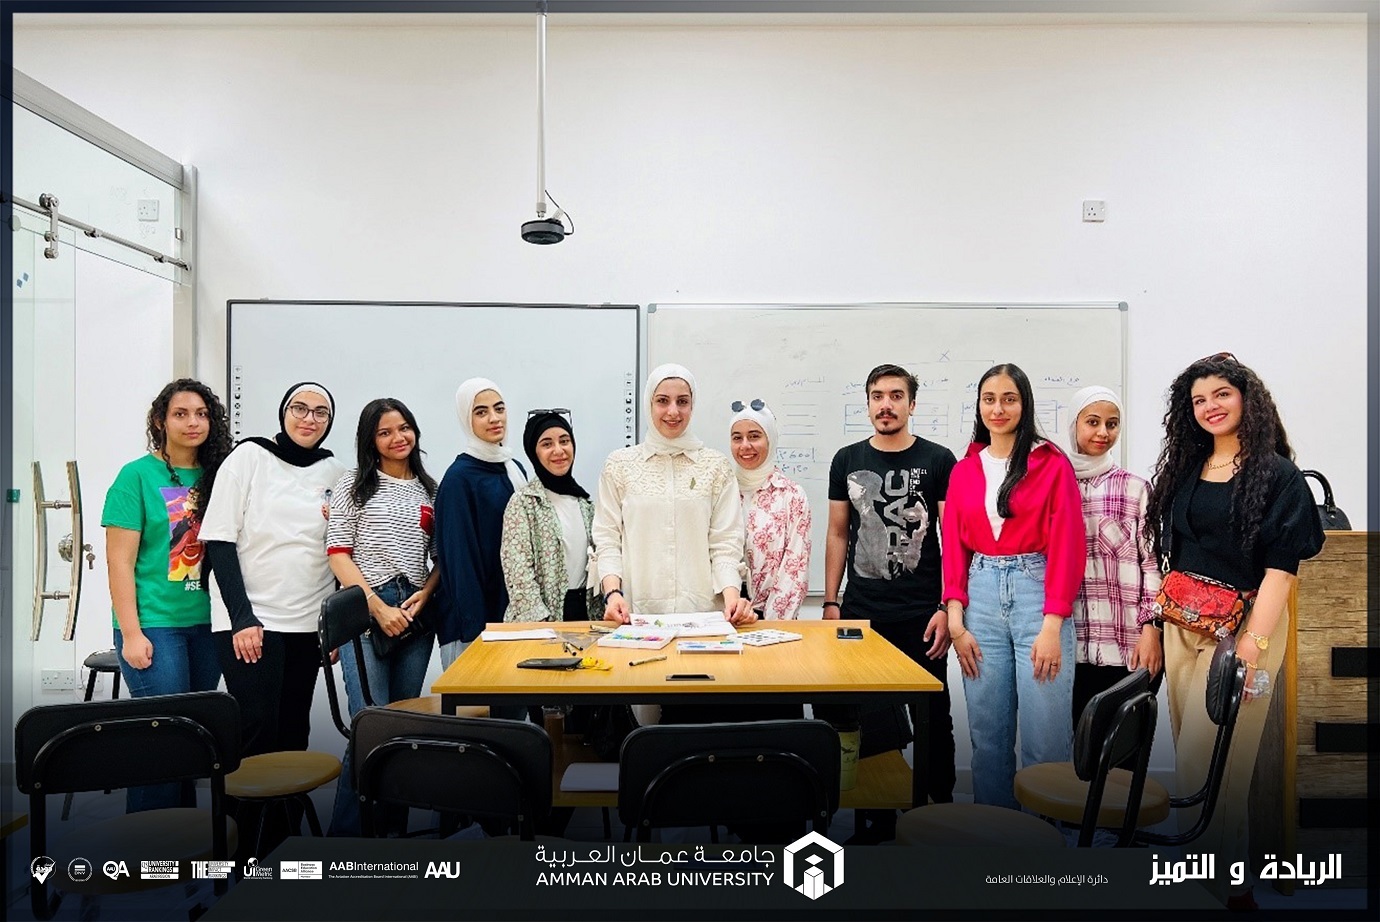 دورة تدريبية حول "الرسم والاظهار المعماري باستخدام الالوان المائية" في عمان العربية